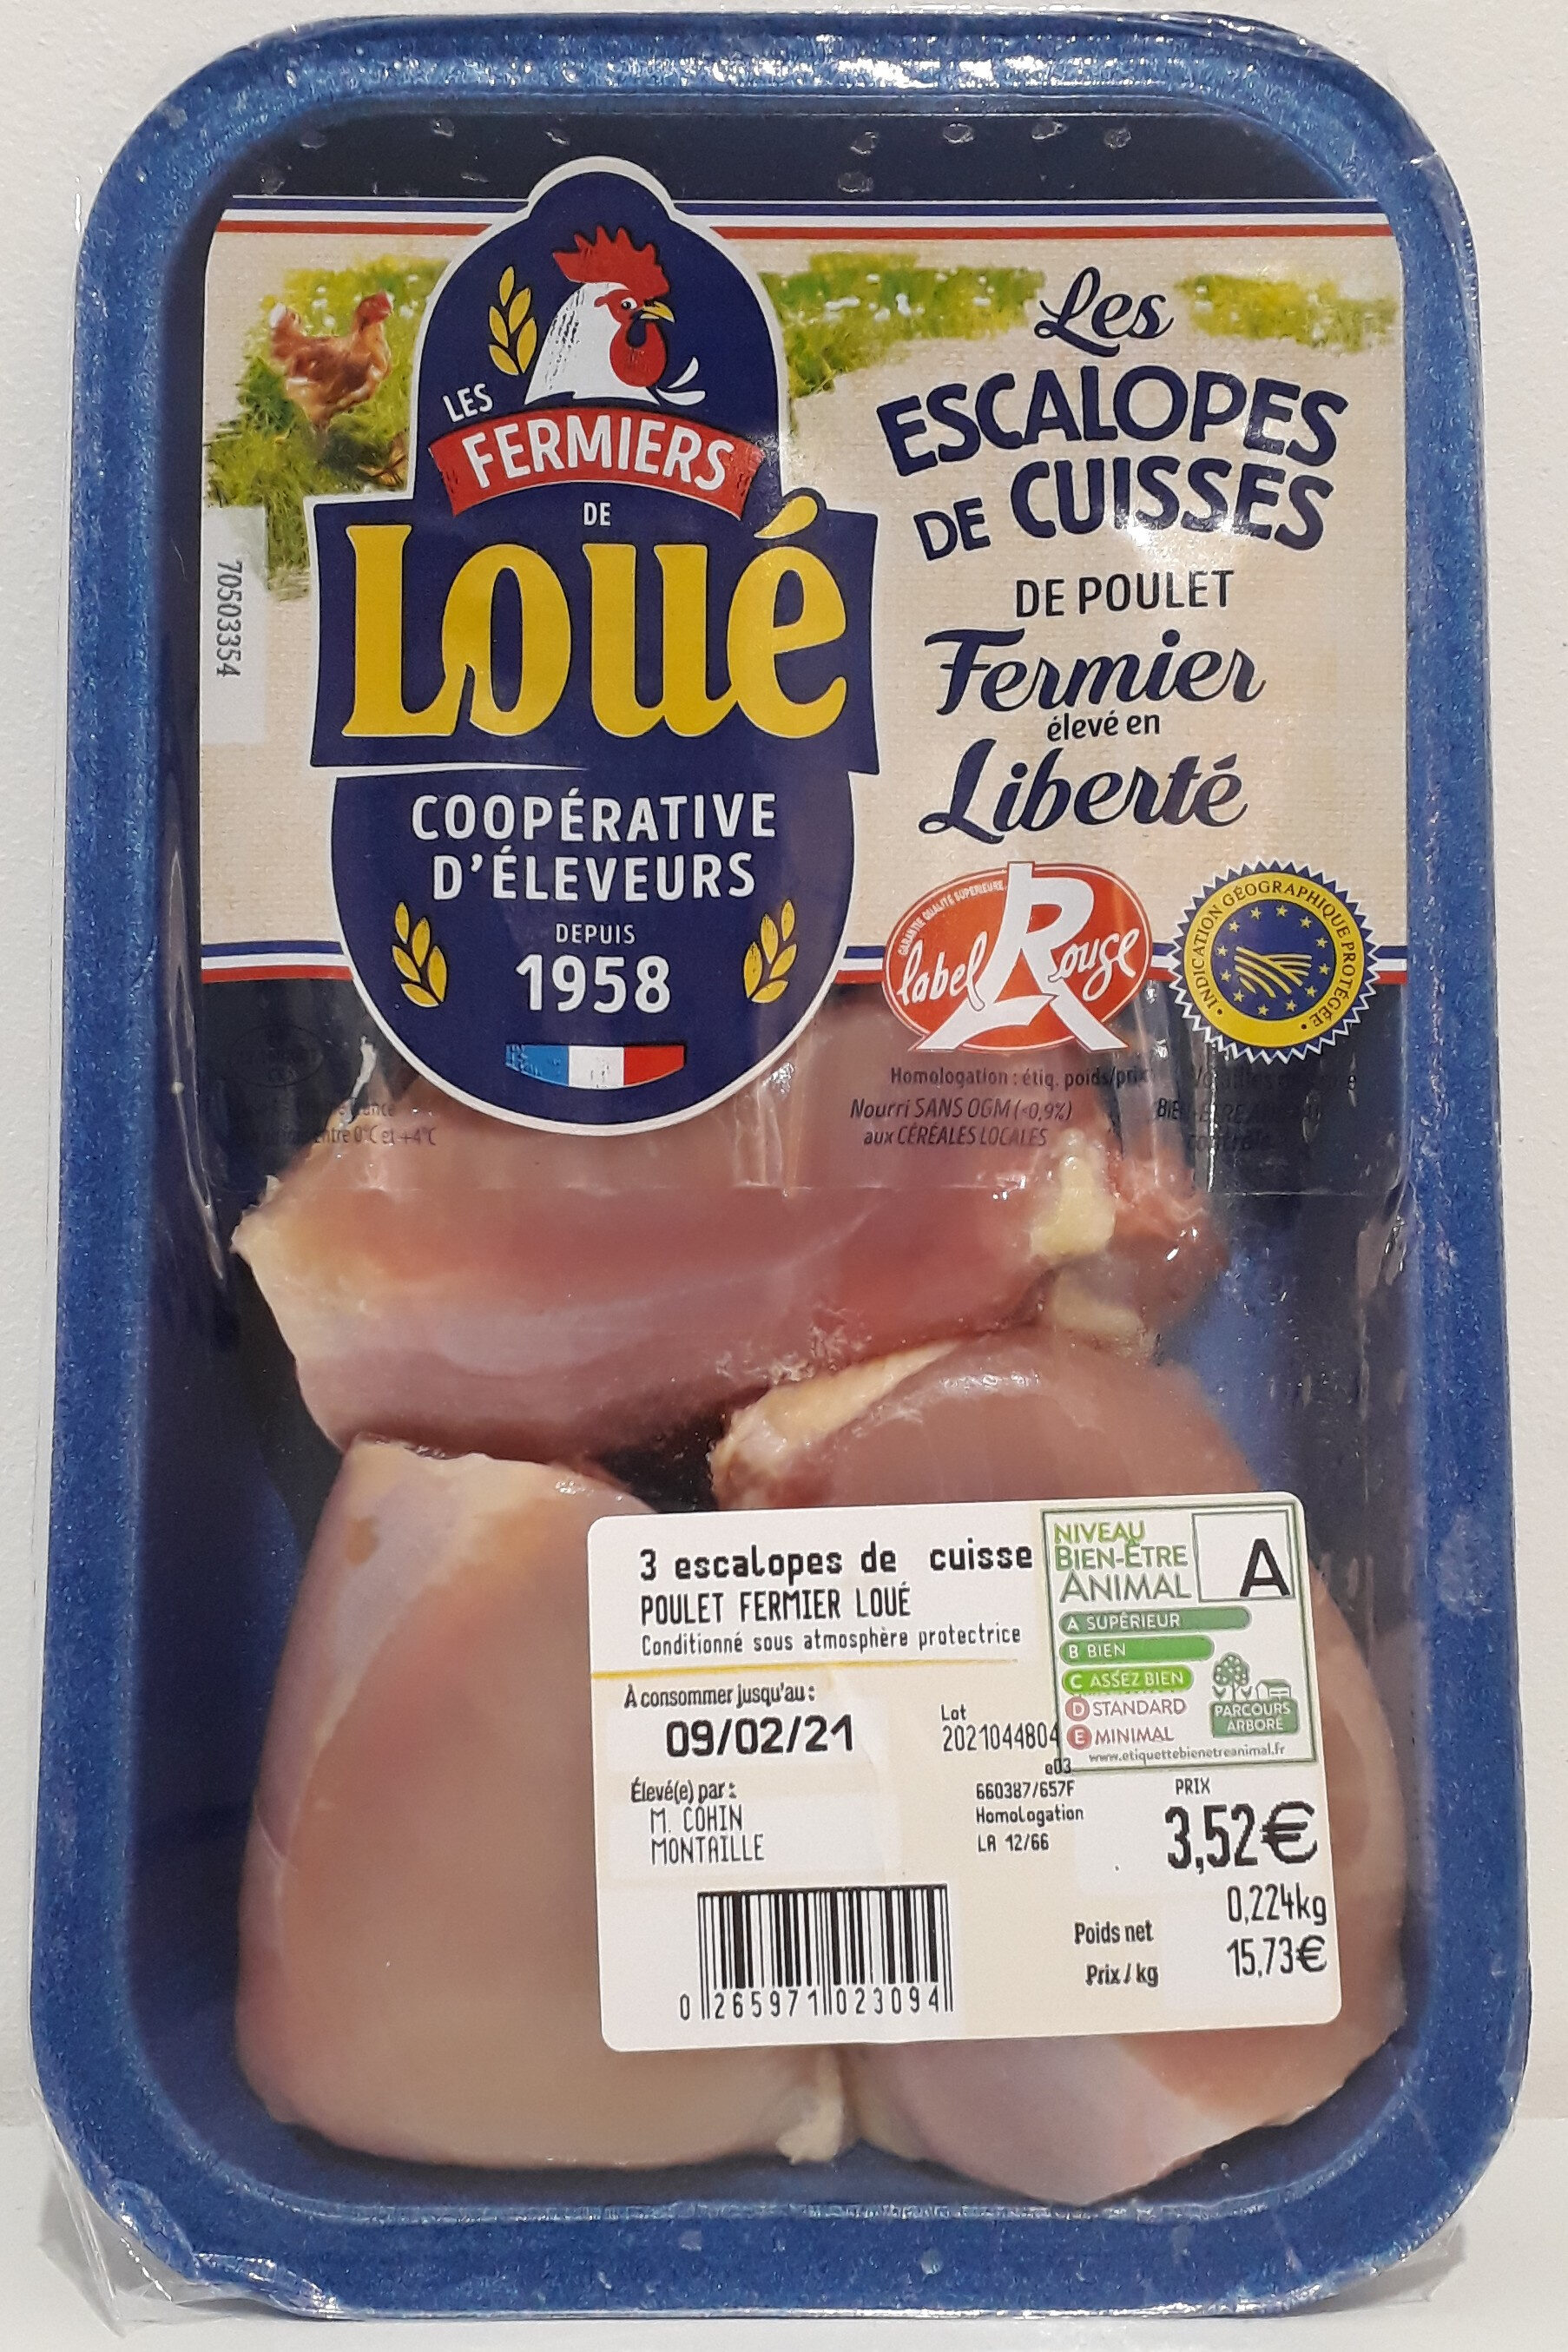 Escalopes de cuisses de poulet fermier - Product - fr